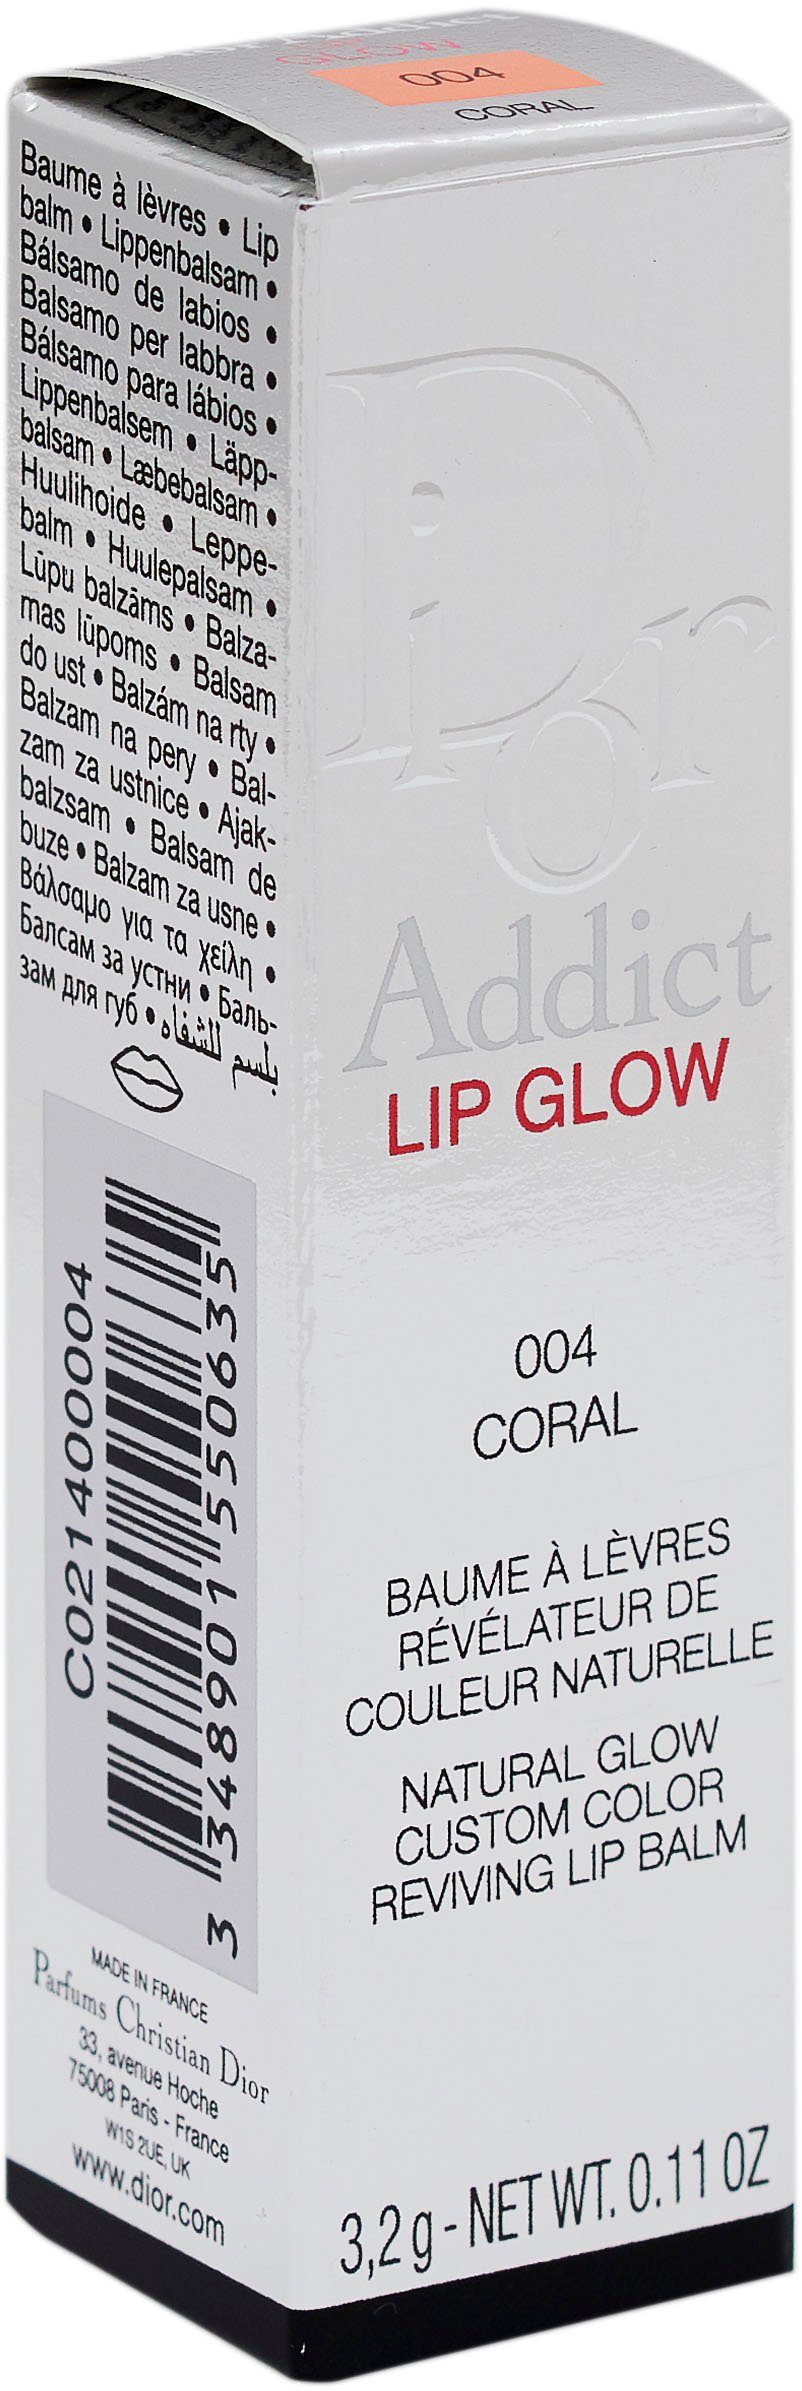 Lip Glow 004 Dior Dior Addict Lippenbalsam Coral